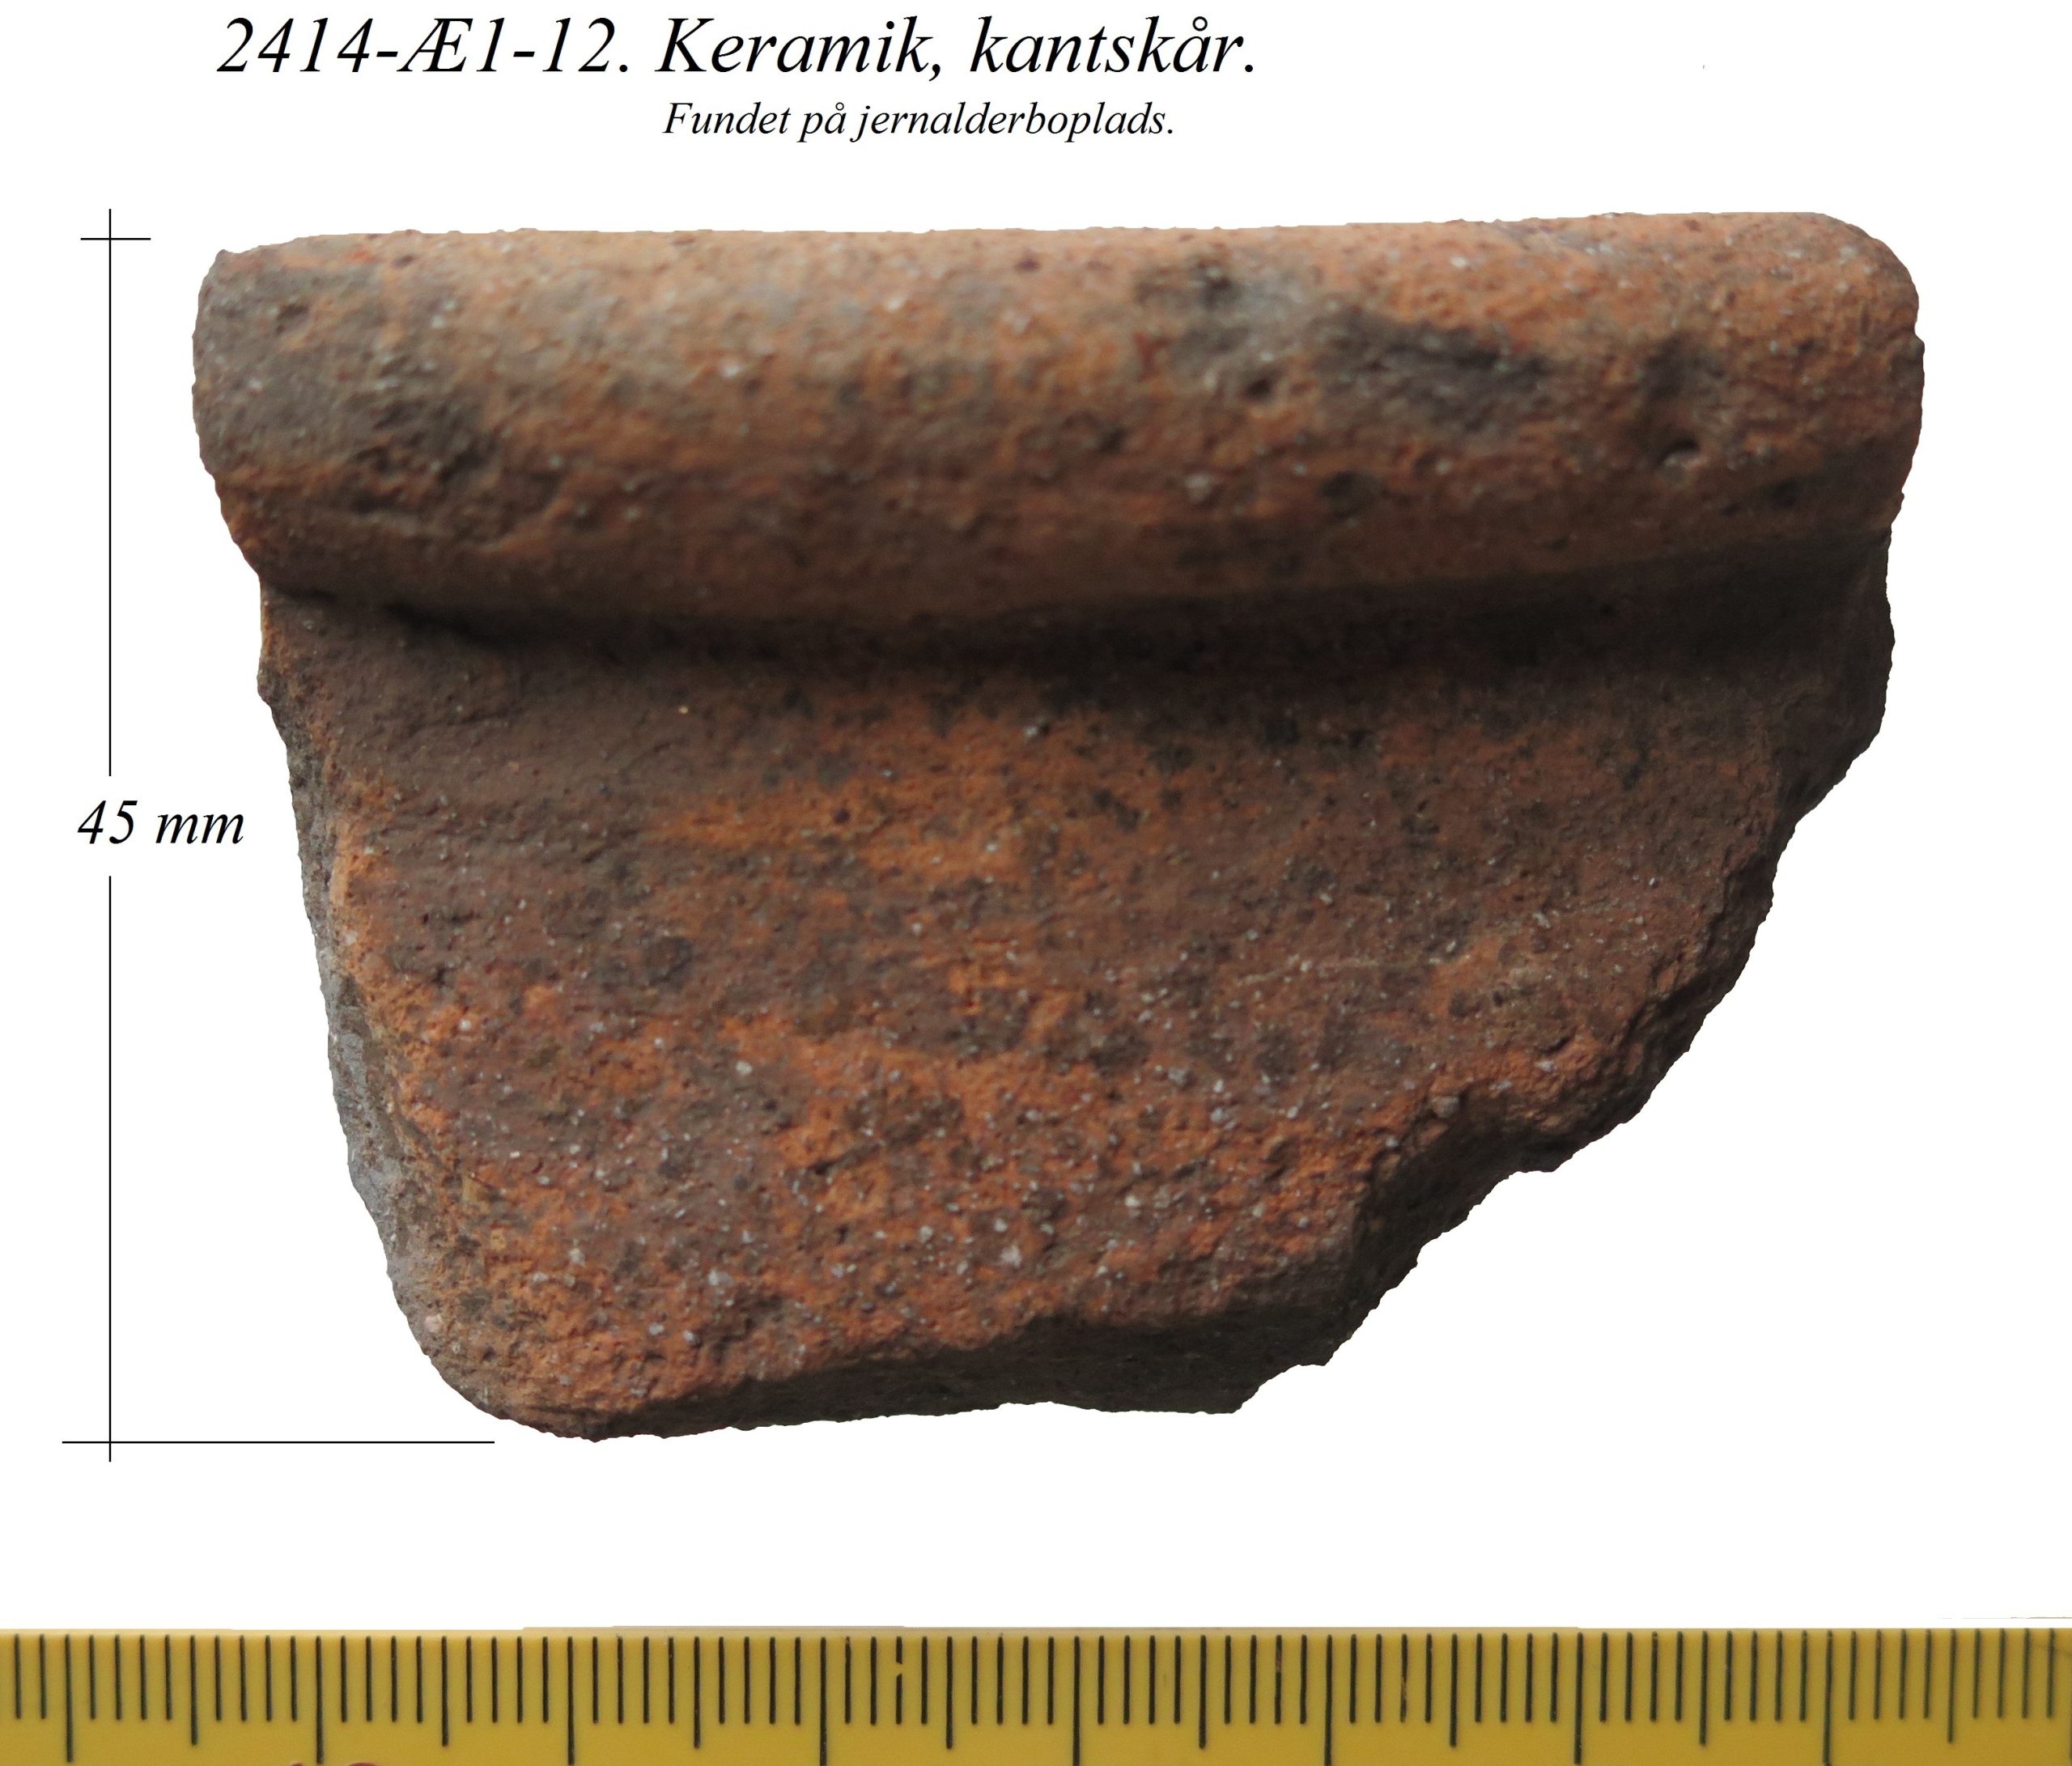 2414-Æ1-12, keramik, kantskår, Kærbygaard (3)